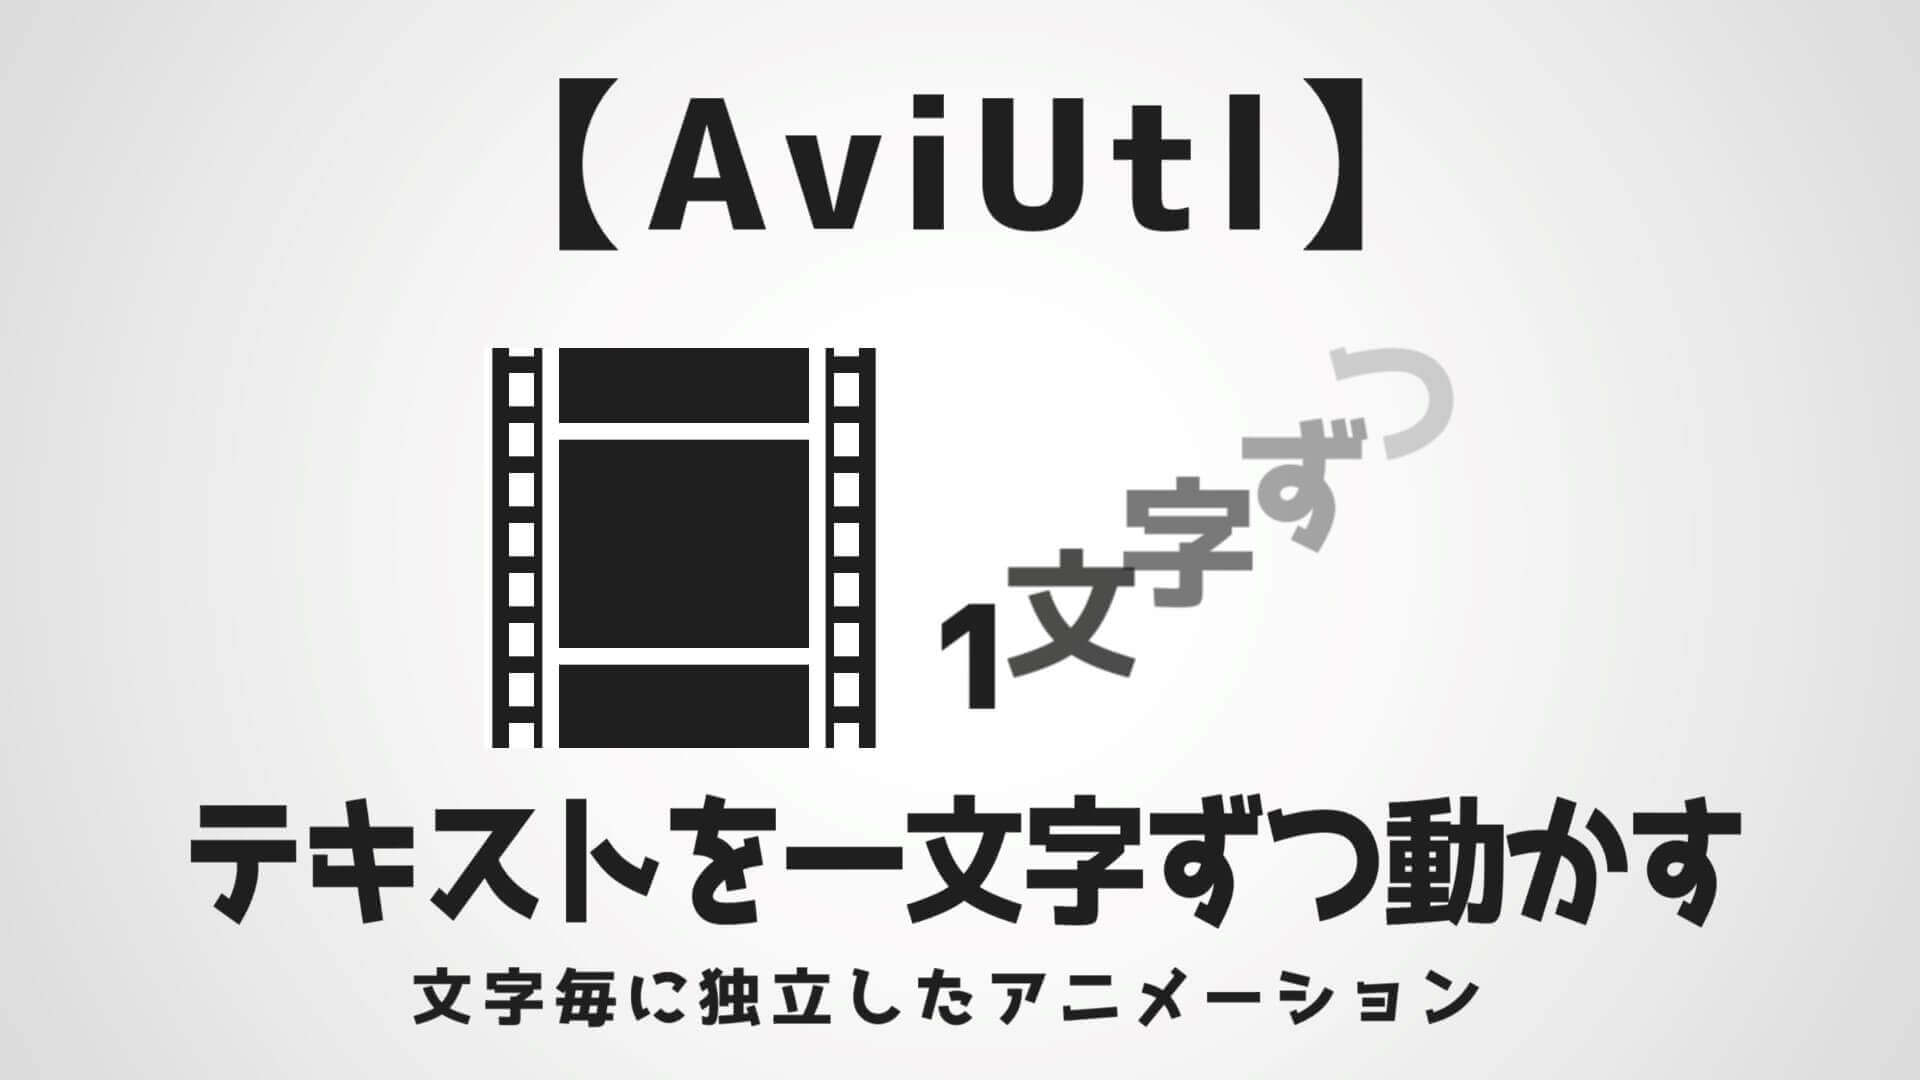 Aviutl テキストを一文字ずつ動かす方法を解説 Aketama Official Blog